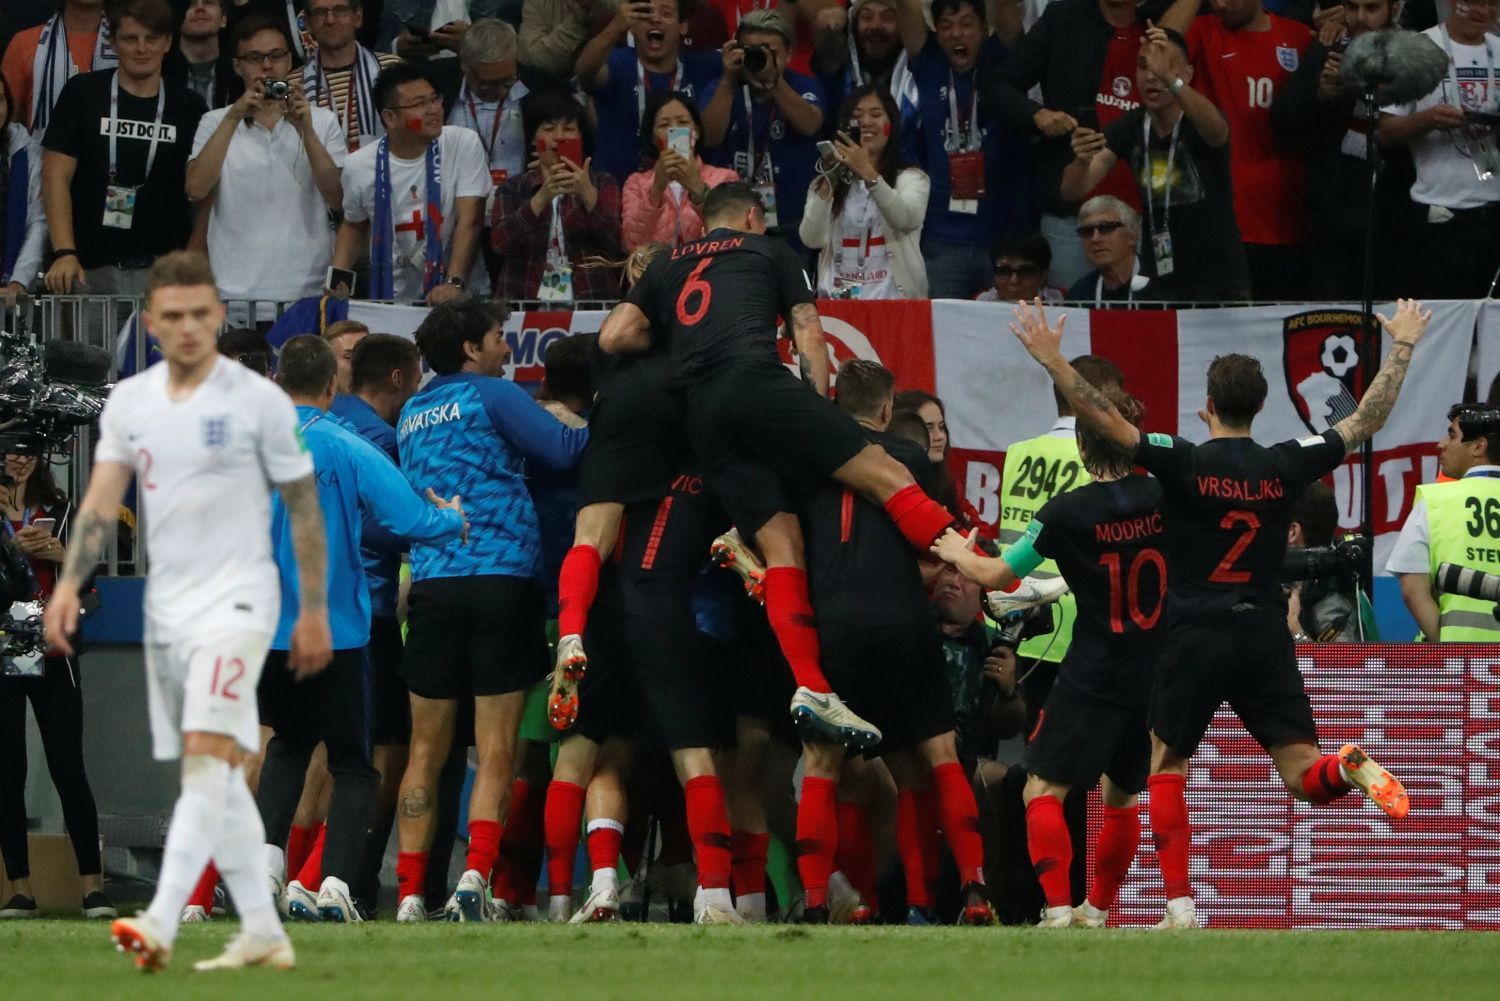 Mario Mandžukič slaví gól v semifinále MS 2018 Chorvatsko - Anglie